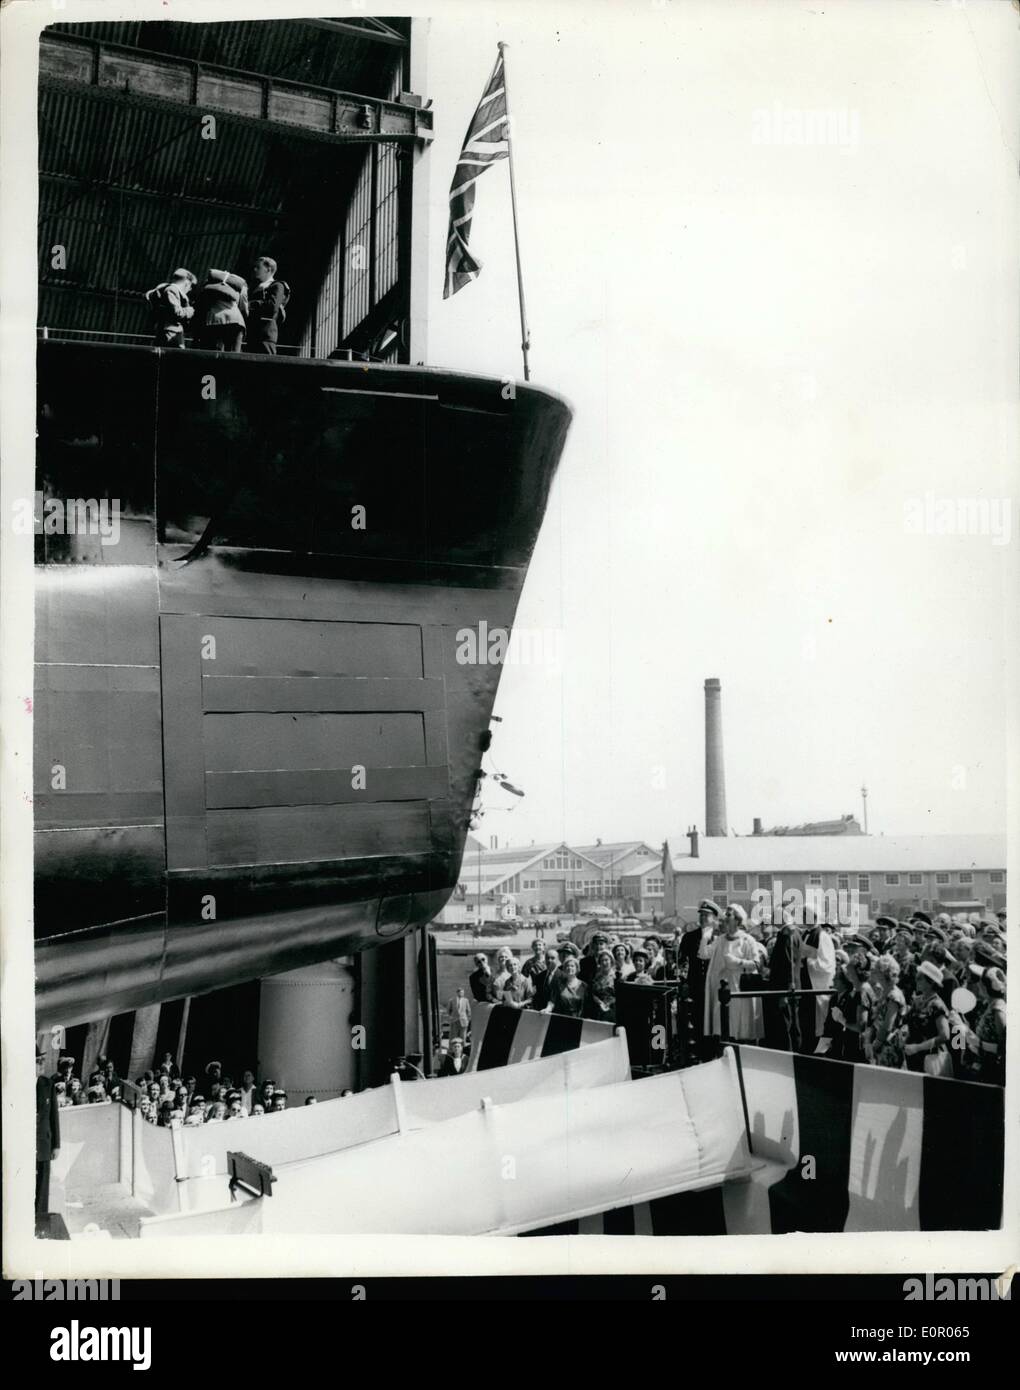 Lug. 07, 1957 - Duchessa di Kent lancia un nuovo sommergibile. S.a.r. la duchessa di Kant ha lanciato oggi il sommergibile H.M.S. OBERON a Foto Stock